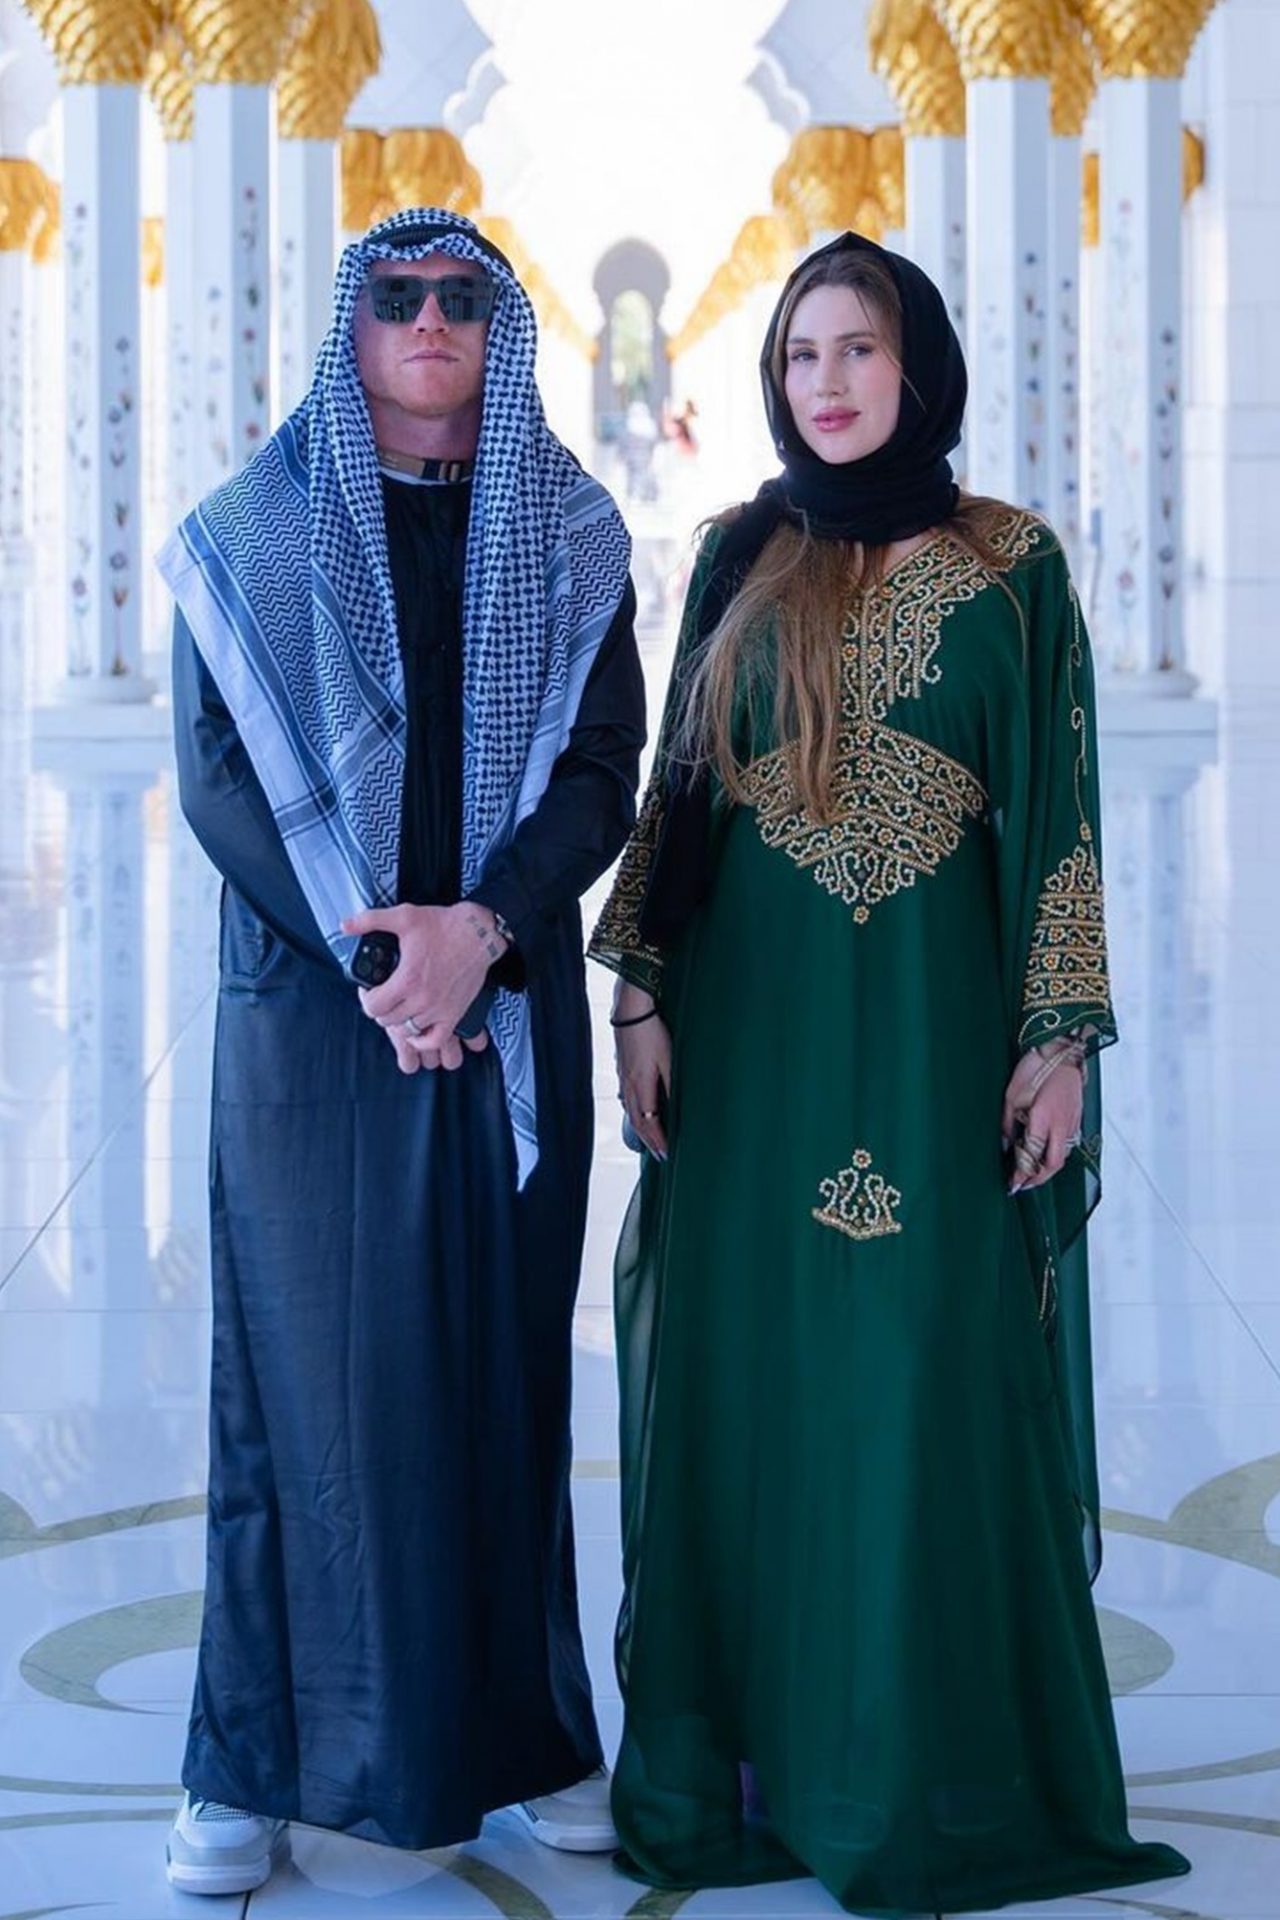 Su 'outfit' en la mezquita